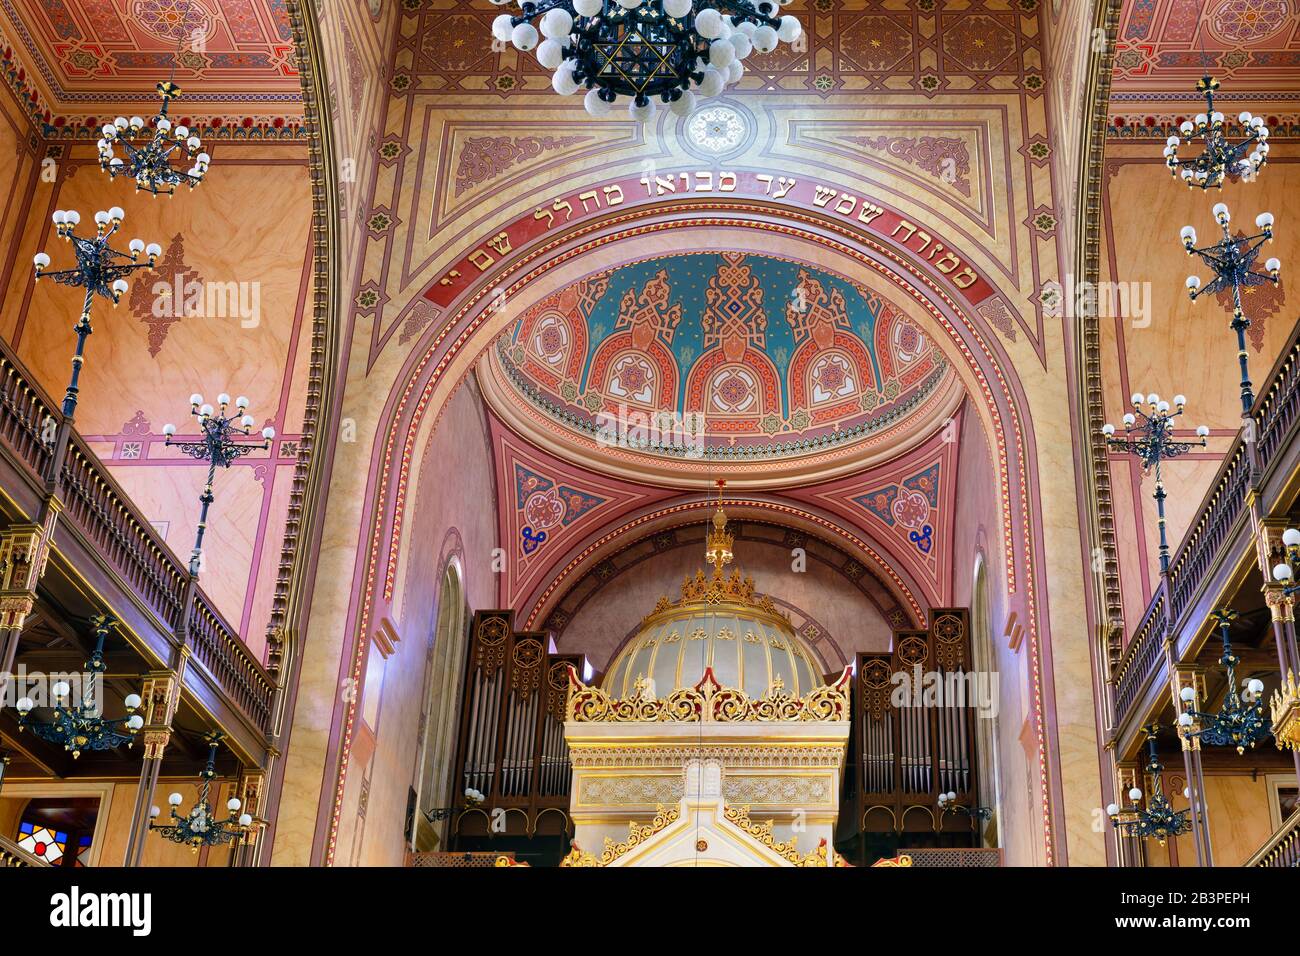 Inneneinrichtung der Großen Synagoge - Tabakgasse - in Budapest, Ungarn. Stockfoto